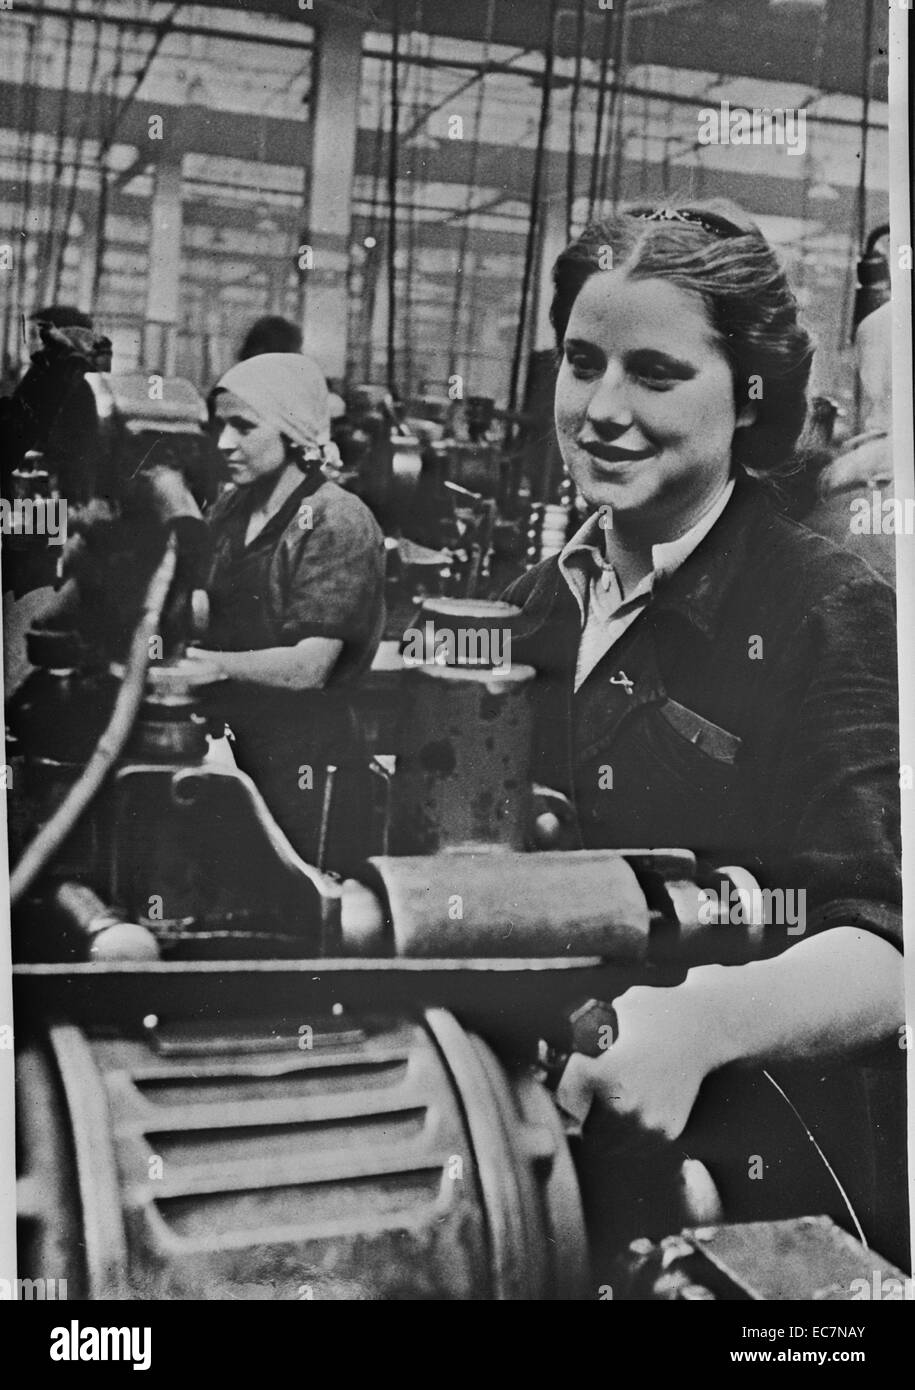 Traitement des femmes au tour dans une usine dans l'URSS (Union des Républiques socialistes soviétiques) Banque D'Images